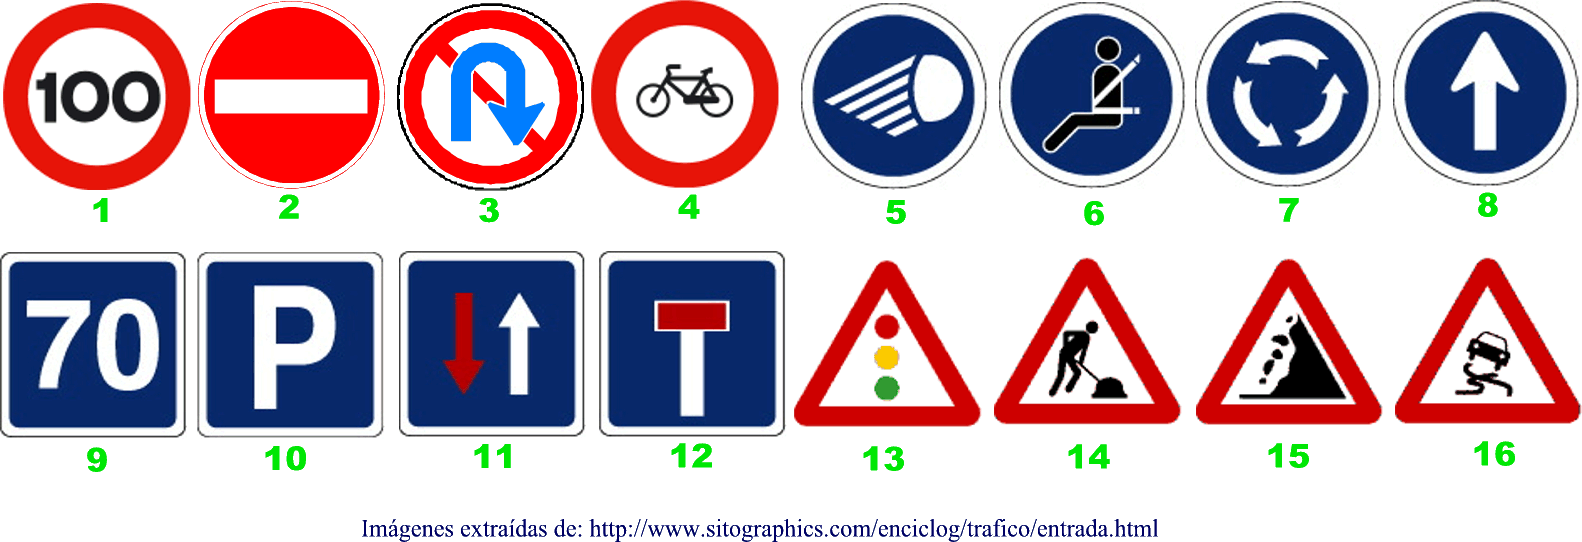 16 señales de tráfico